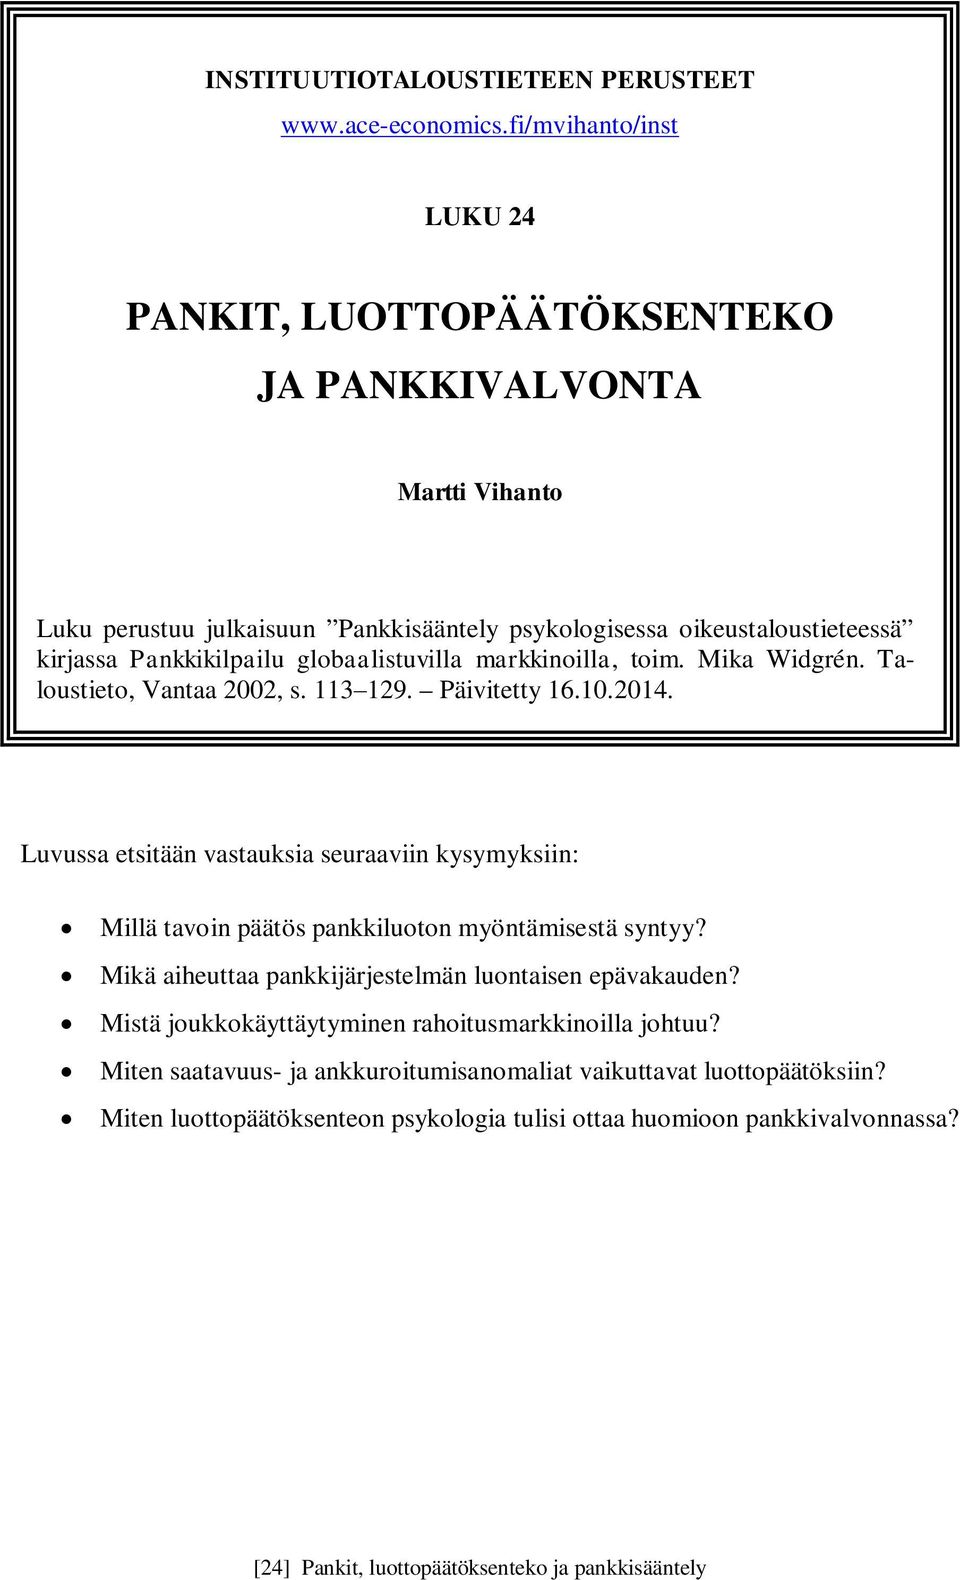 Pankkikilpailu globaalistuvilla markkinoilla, toim. Mika Widgrén. Taloustieto, Vantaa 2002, s. 113 129. Päivitetty 16.10.2014.